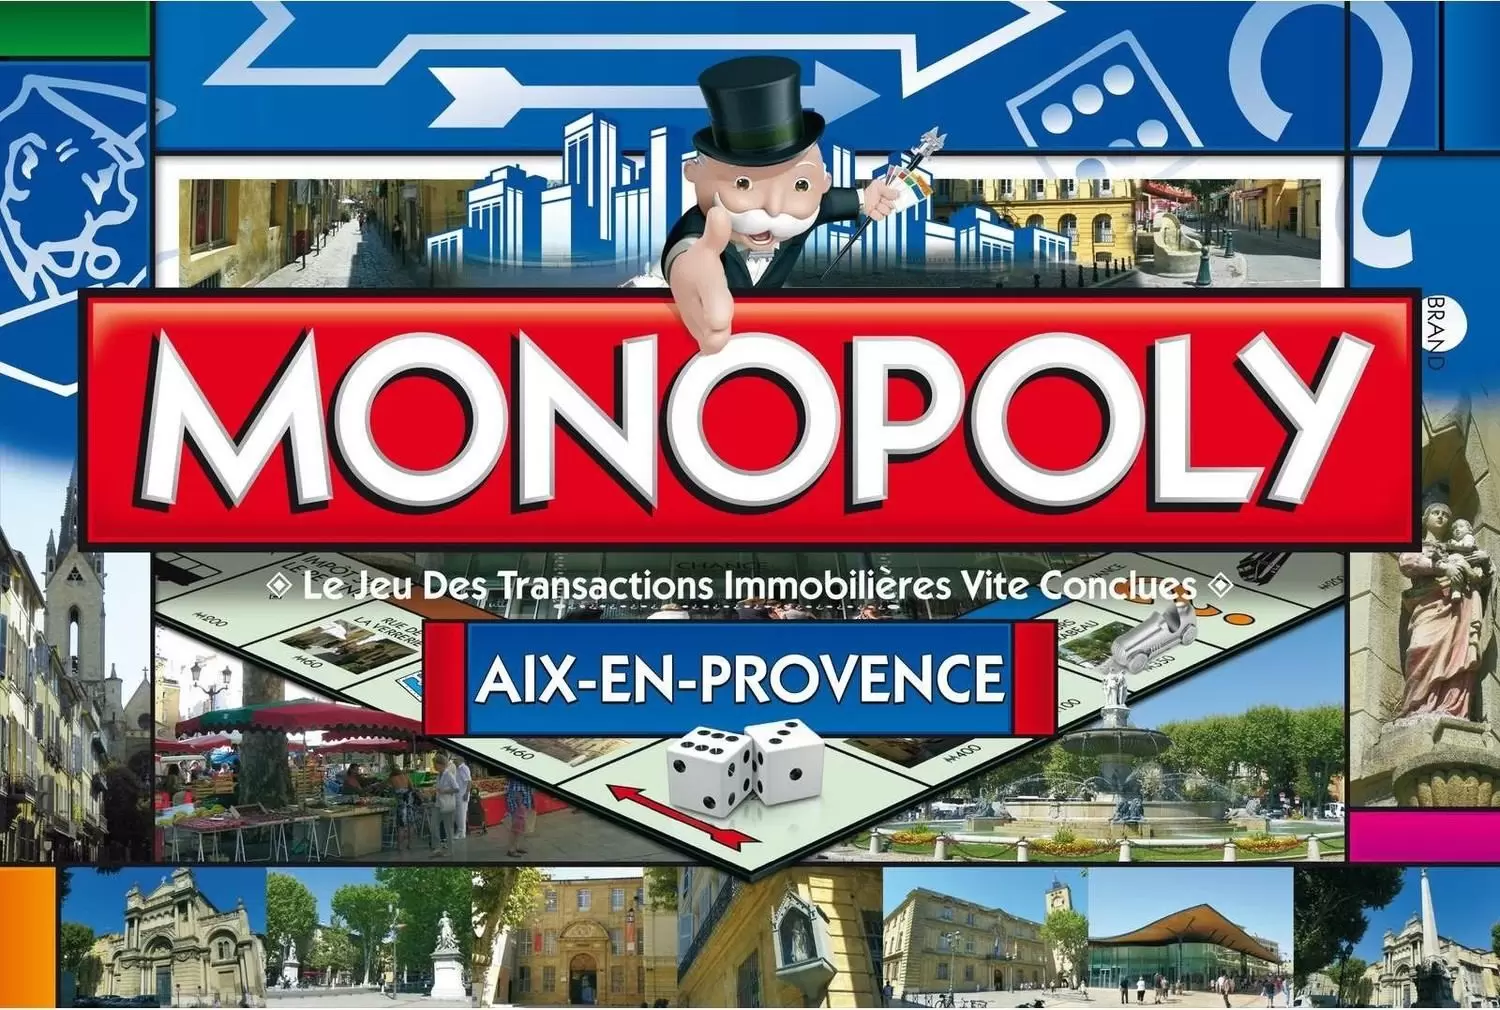 Monopoly des Régions & villes - Monopoly Aix-en-Provence